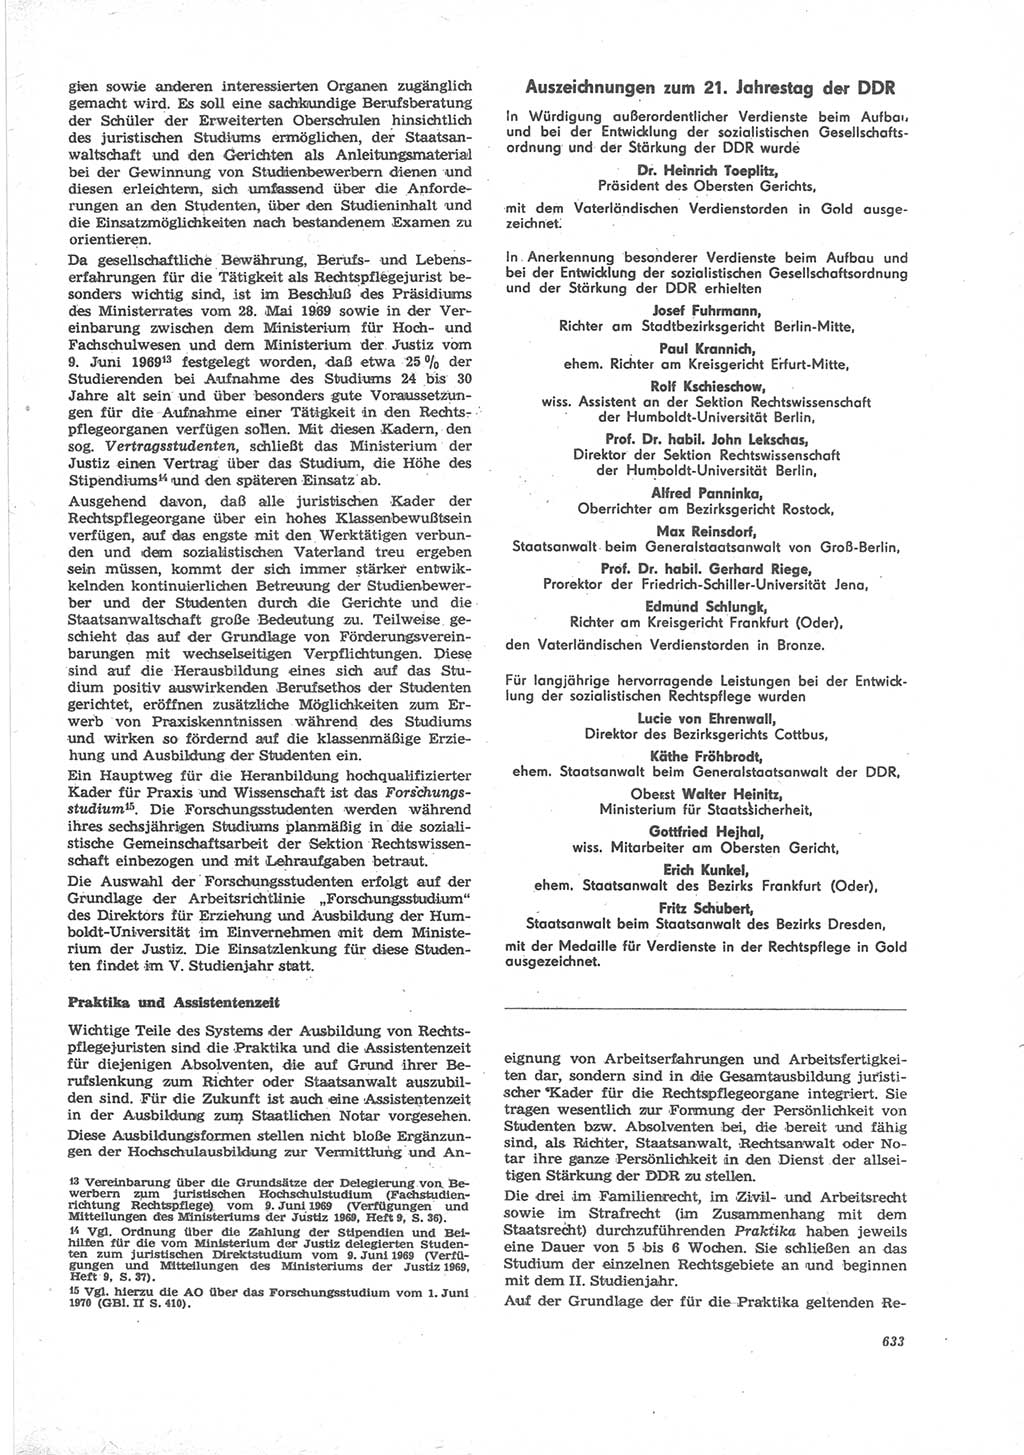 Neue Justiz (NJ), Zeitschrift für Recht und Rechtswissenschaft [Deutsche Demokratische Republik (DDR)], 24. Jahrgang 1970, Seite 633 (NJ DDR 1970, S. 633)